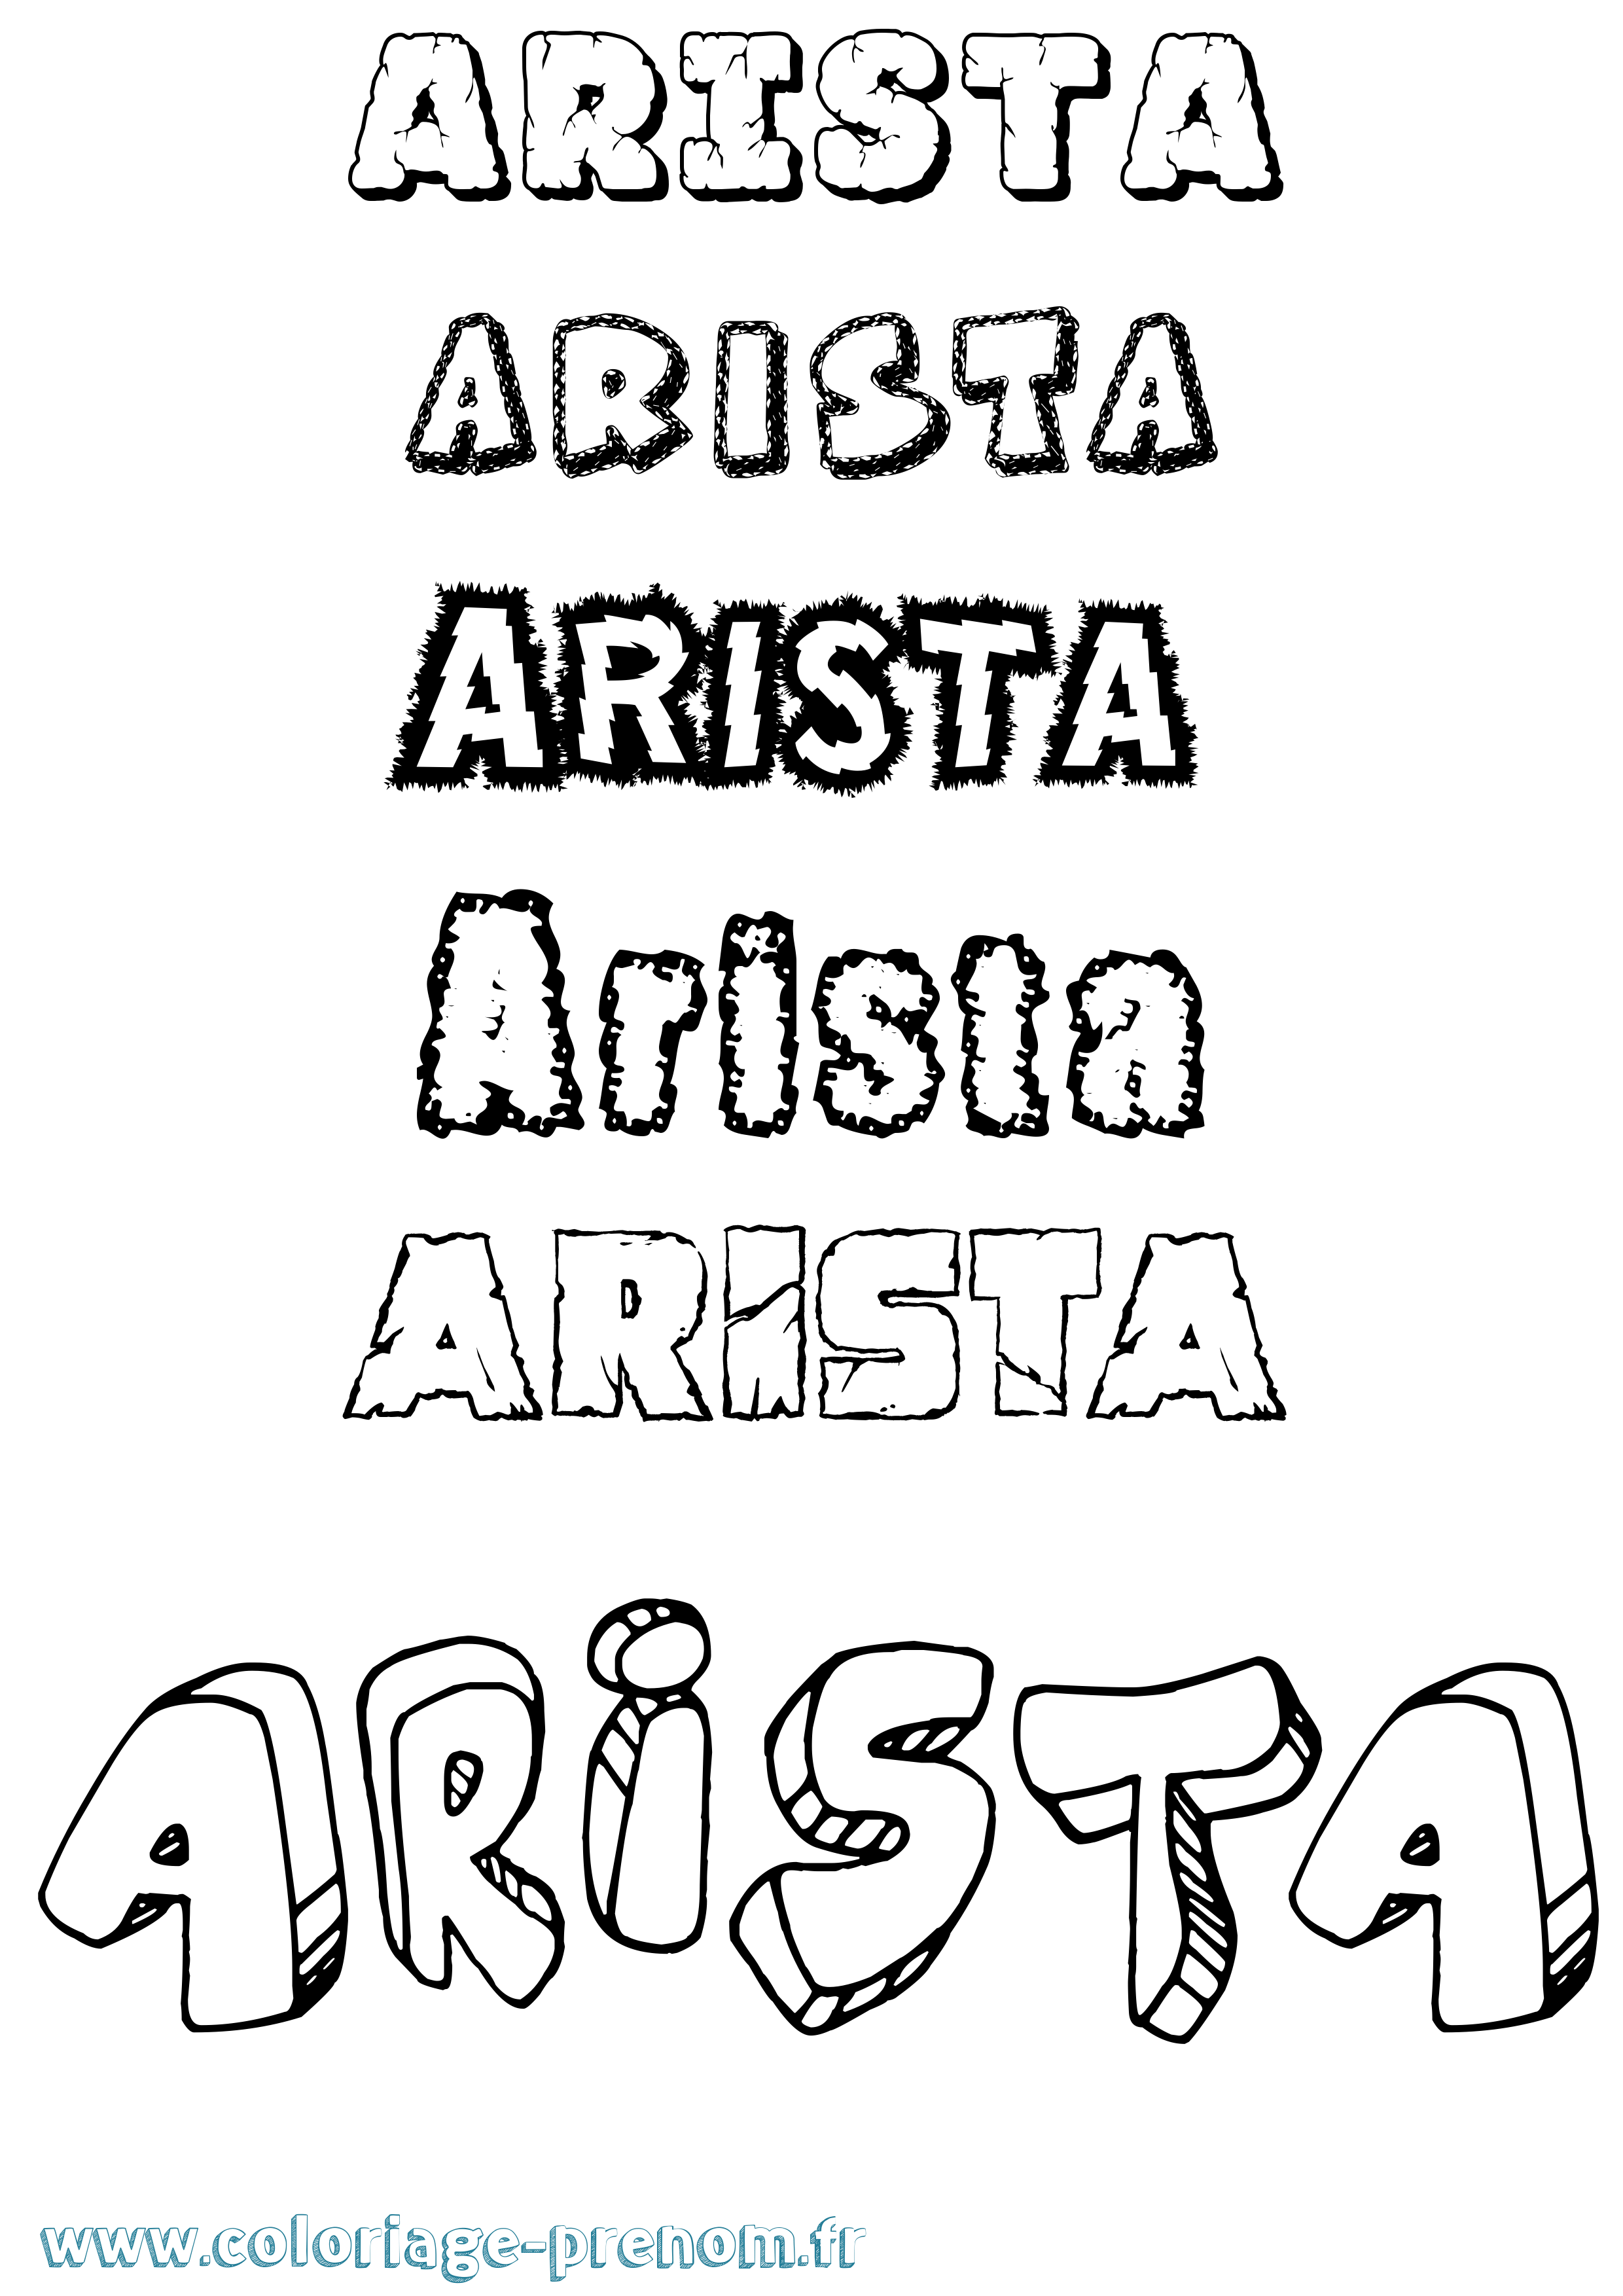 Coloriage prénom Arista